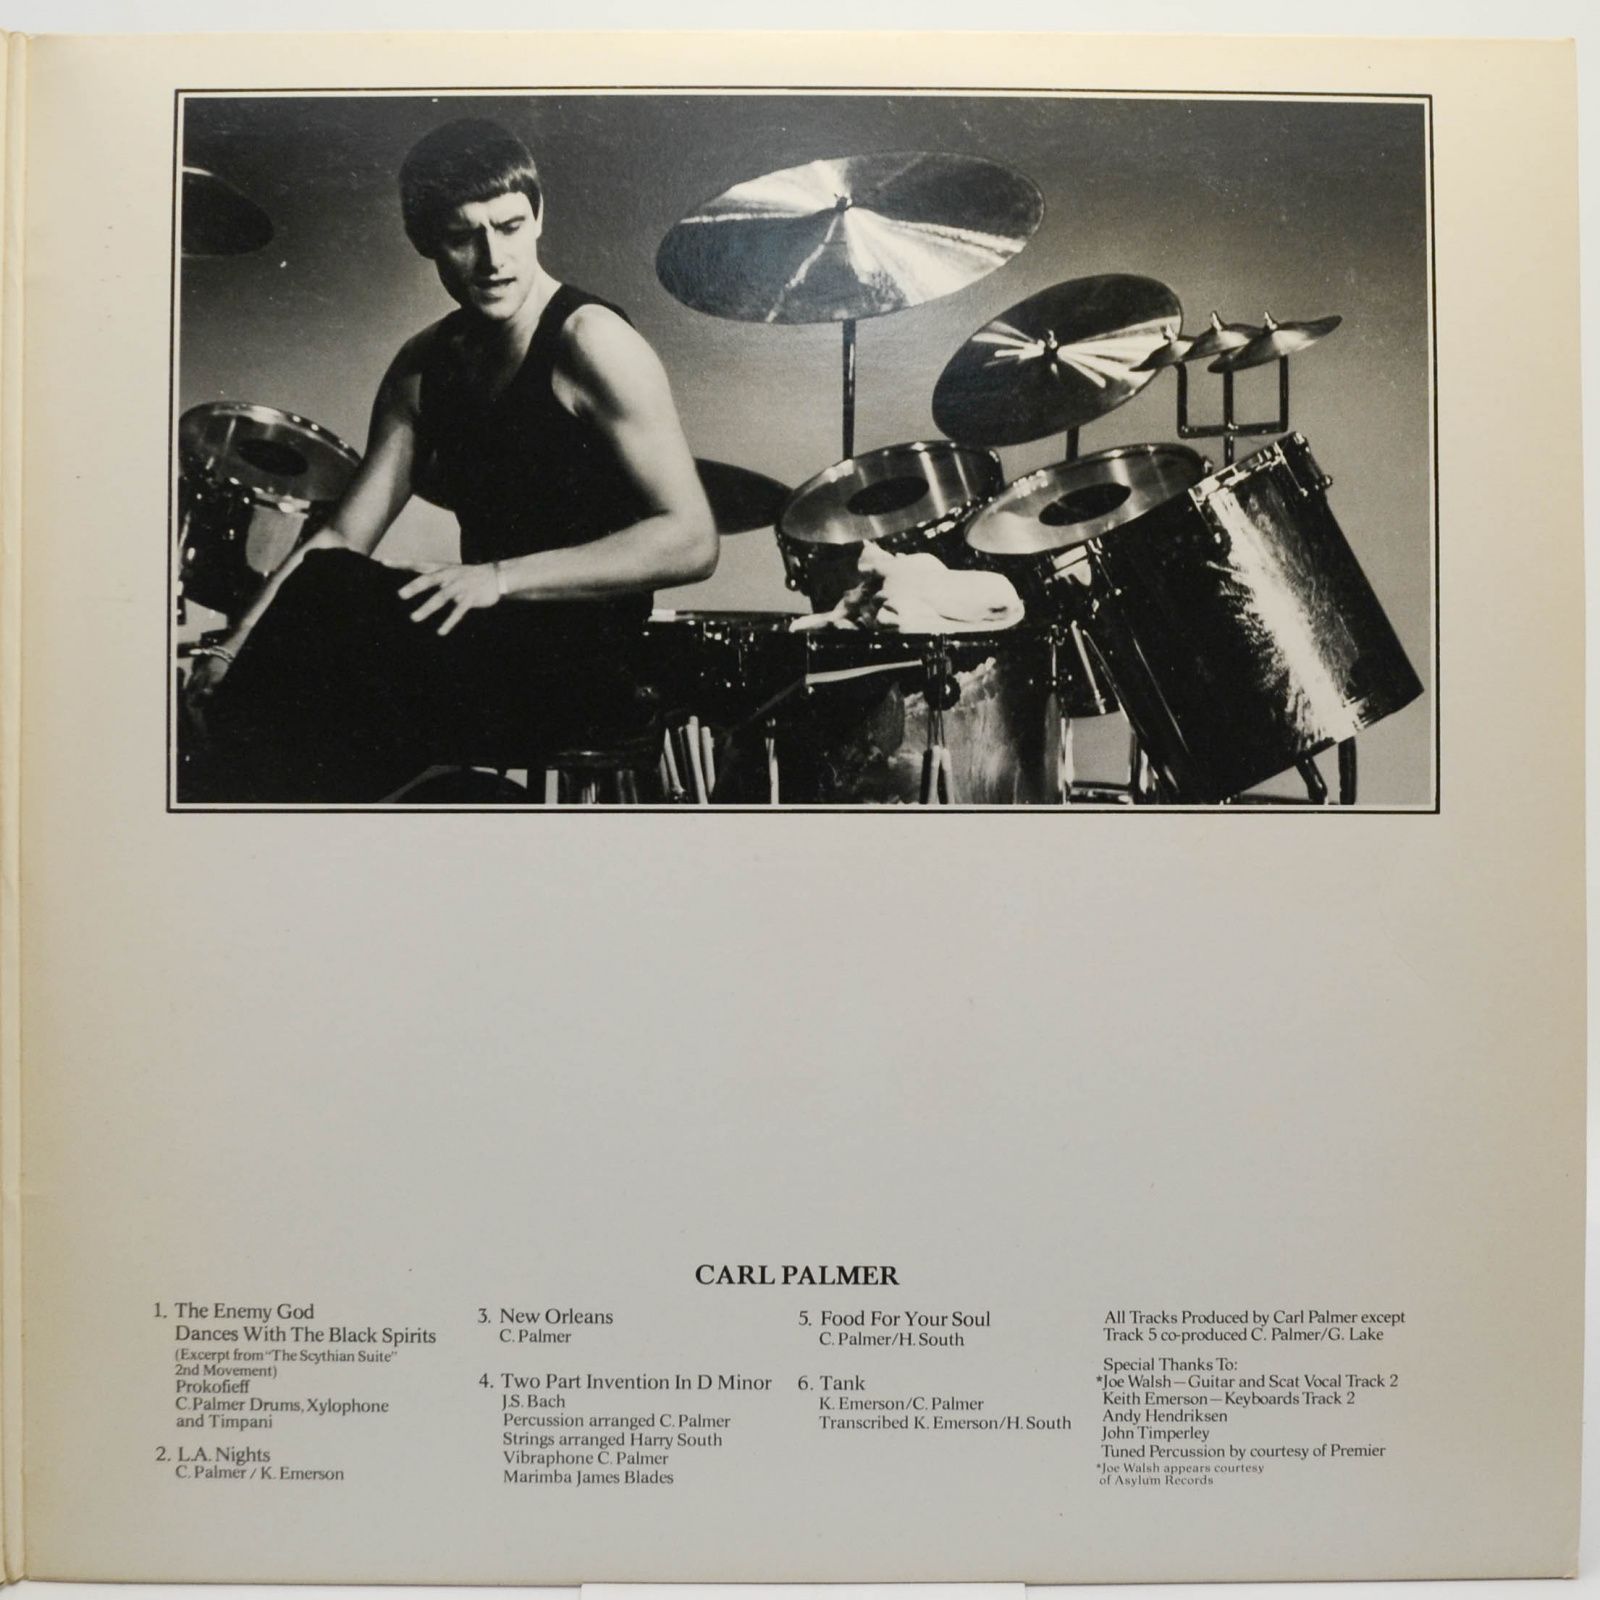 Emerson Lake & Palmer — Works (Volume 1) (2LP), 1977